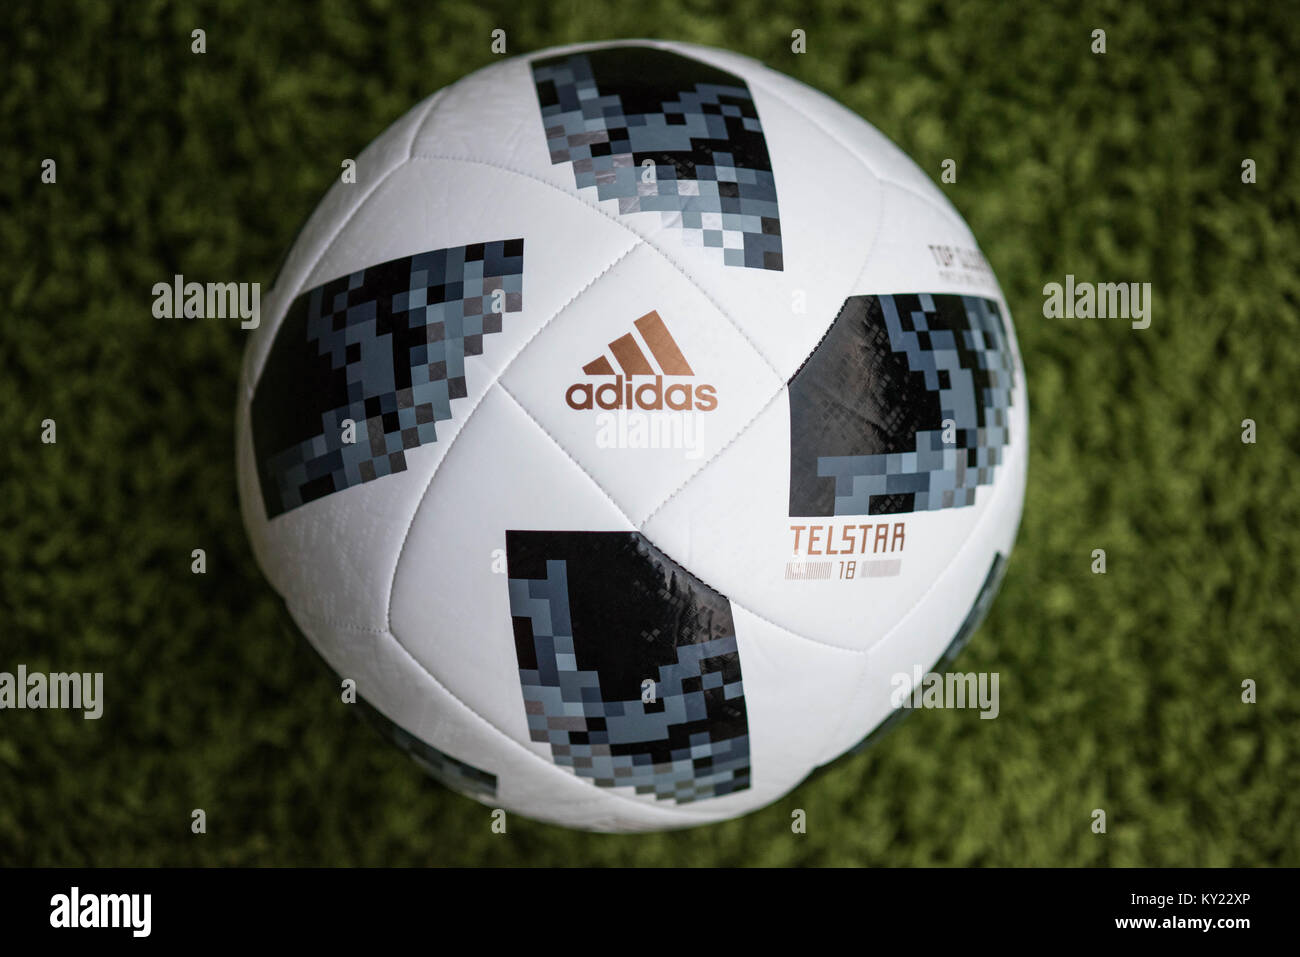 Gazzetta Matchball per la Coppa del Mondo FIFA 2018. Adidas Telstar Football. Foto Stock